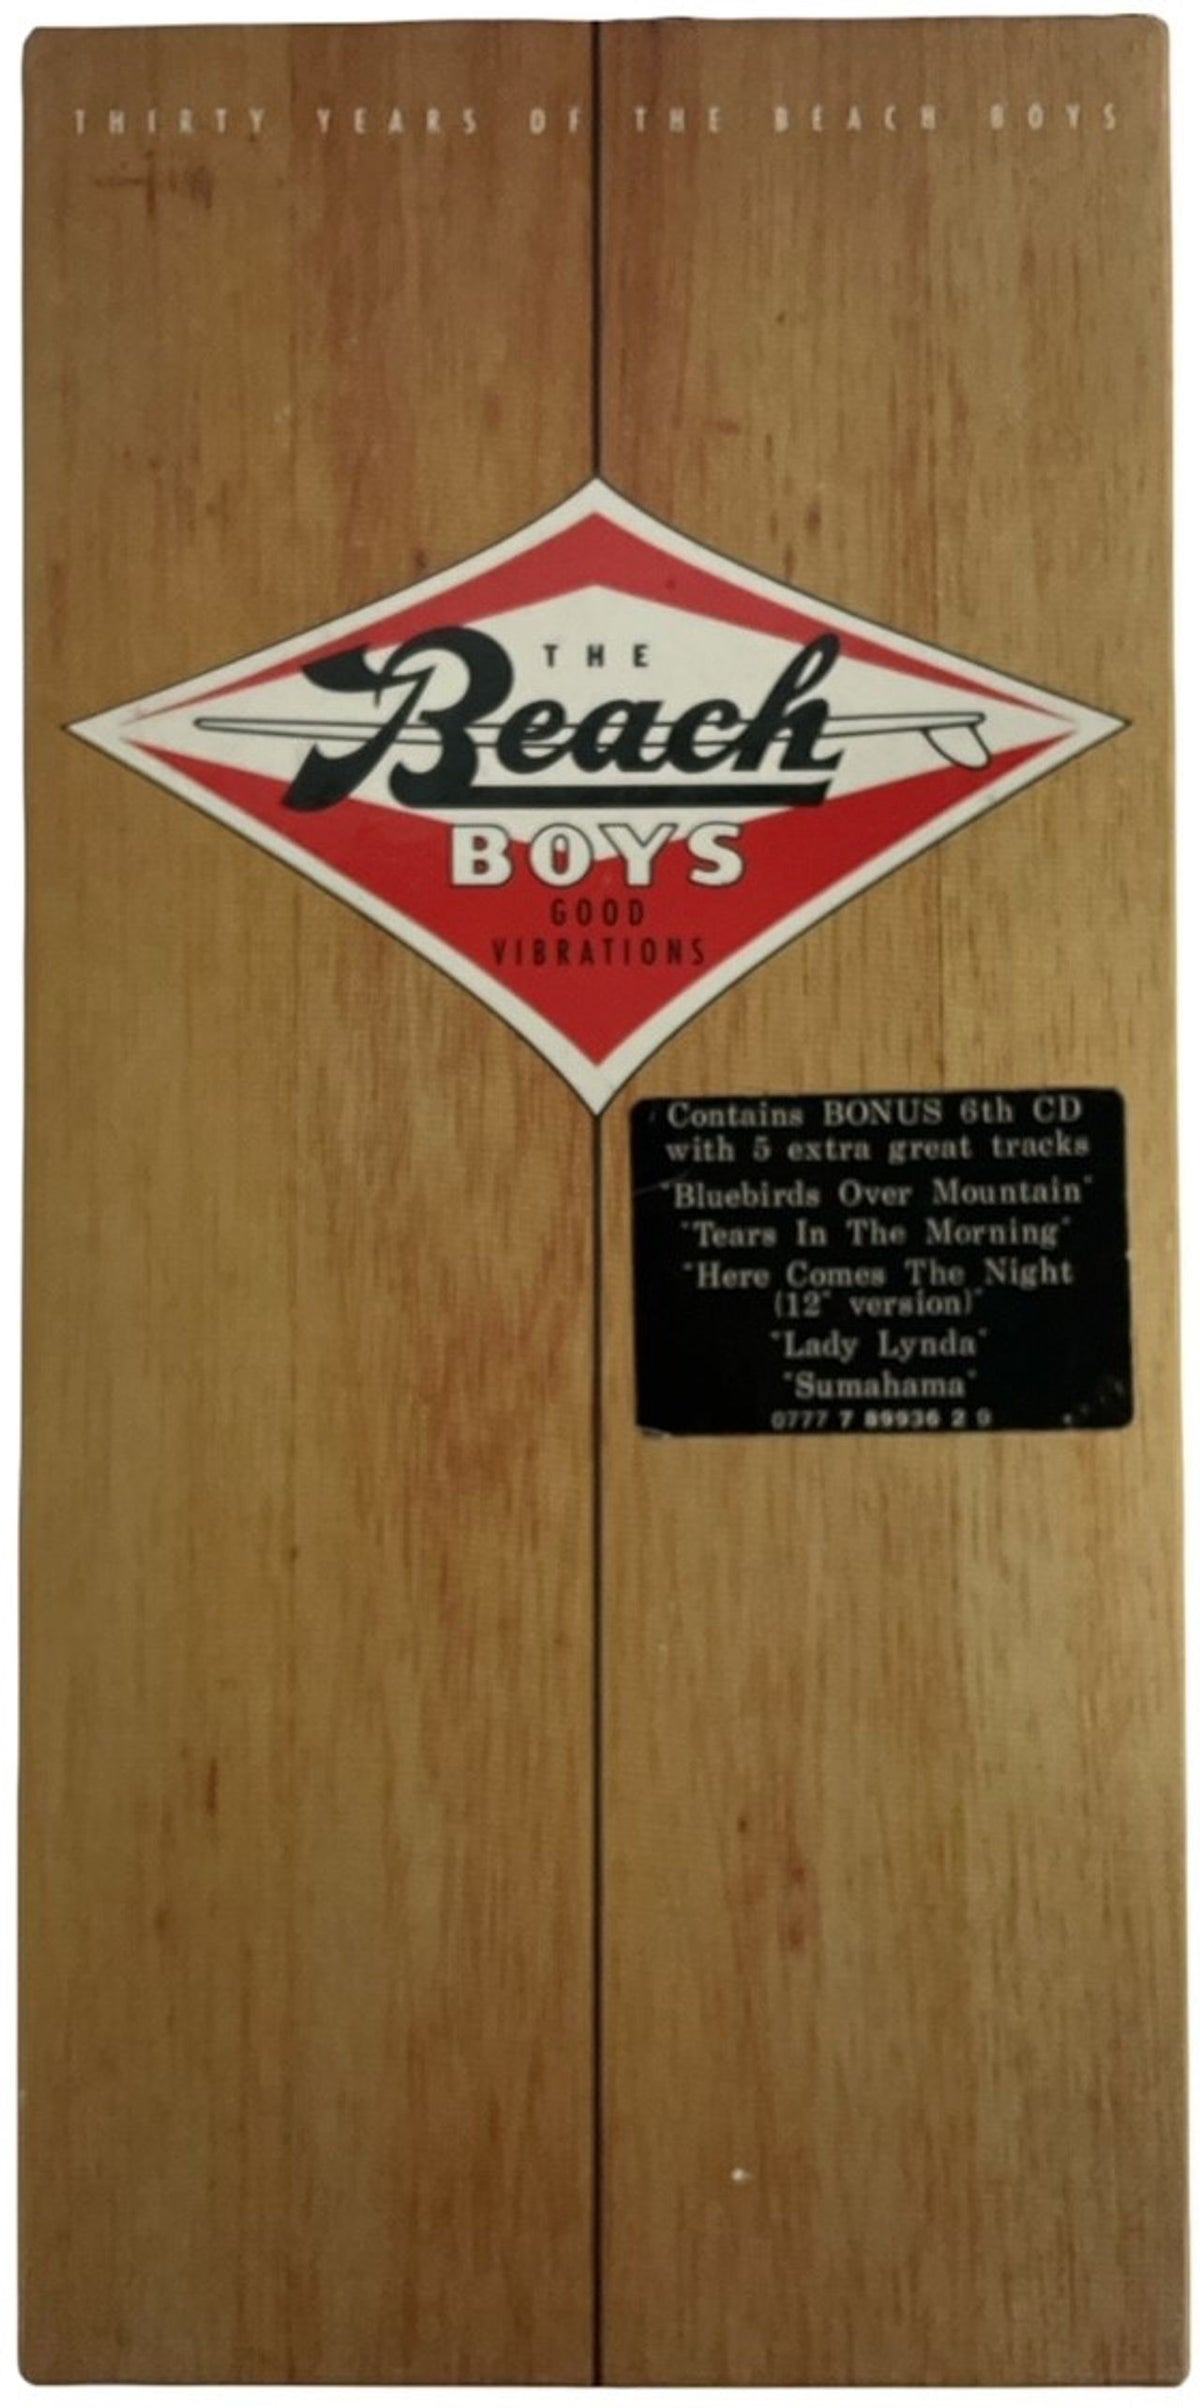 The Beach Boys Good Vibrations - 6 Discs UK Cd album box set